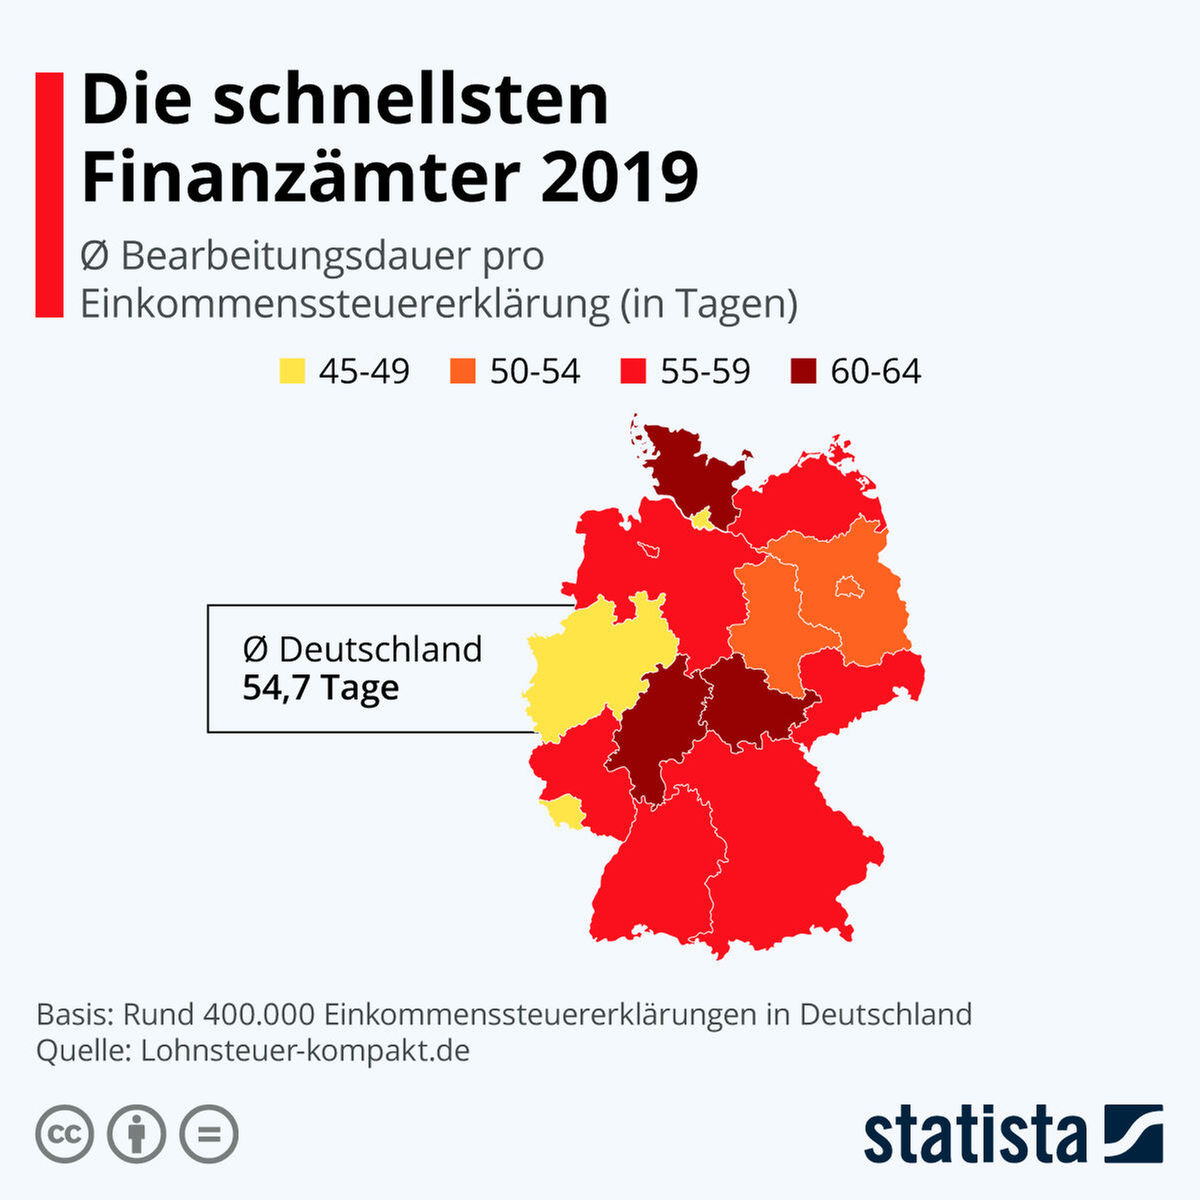 Das sind die schnellsten Finanzämter Deutschlands